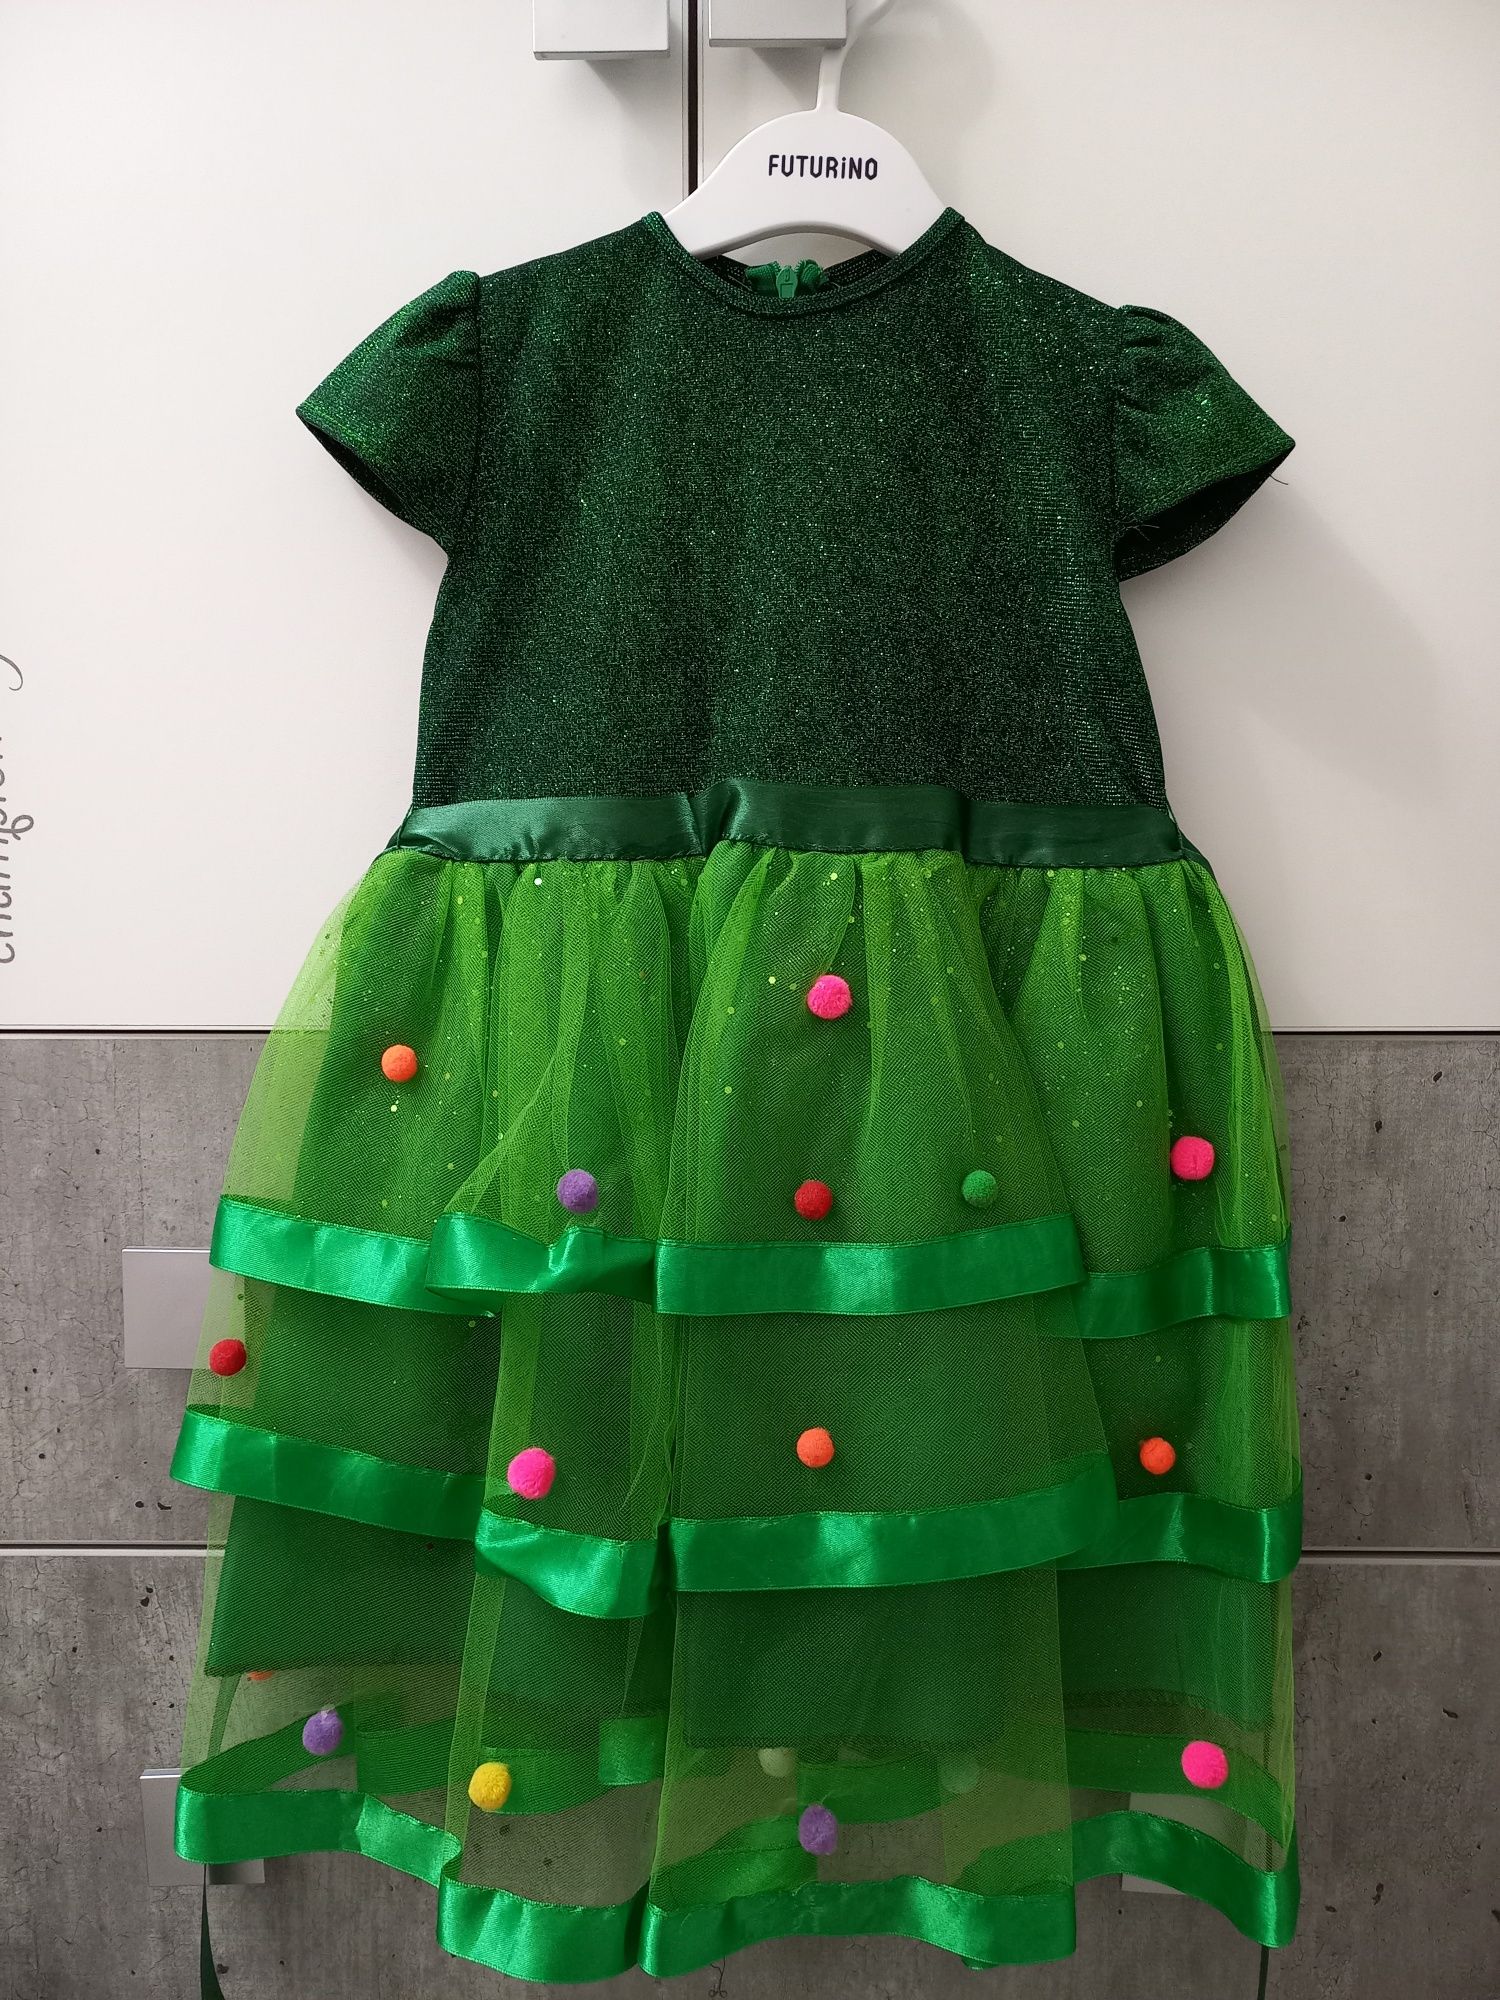 Новогоднее платье Елочка 4-5 лет